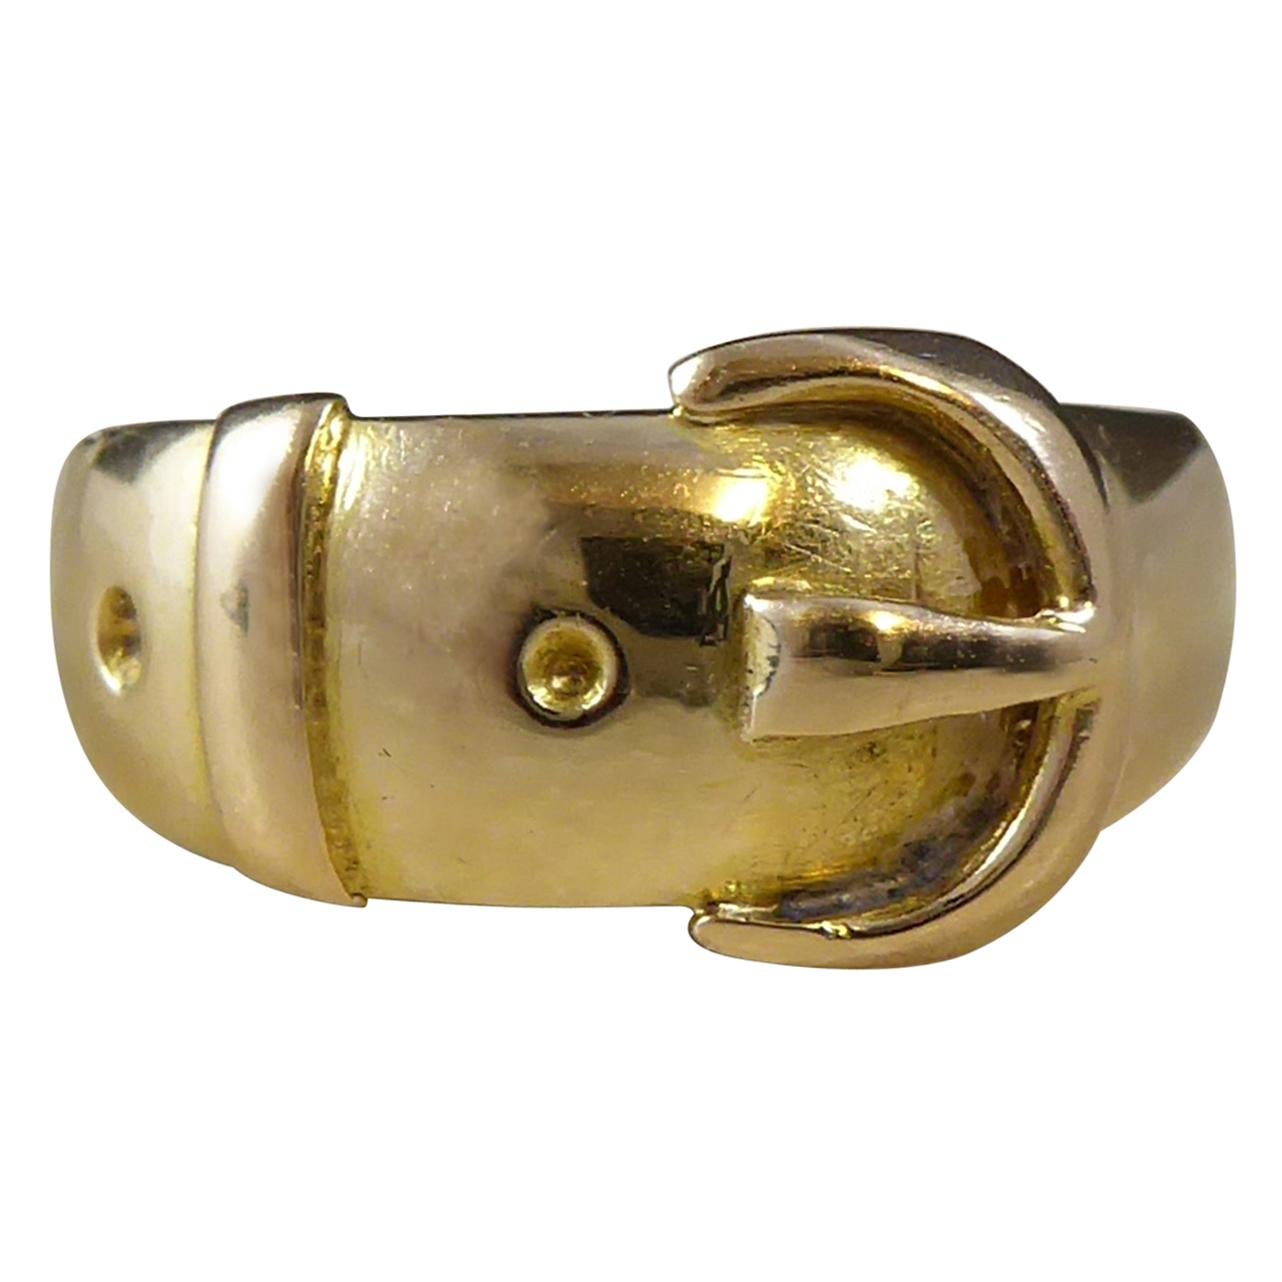 Antique Victorian Gold Buckle Ring, 18 Carat Gold, Hallmarked 1896 Birmingham